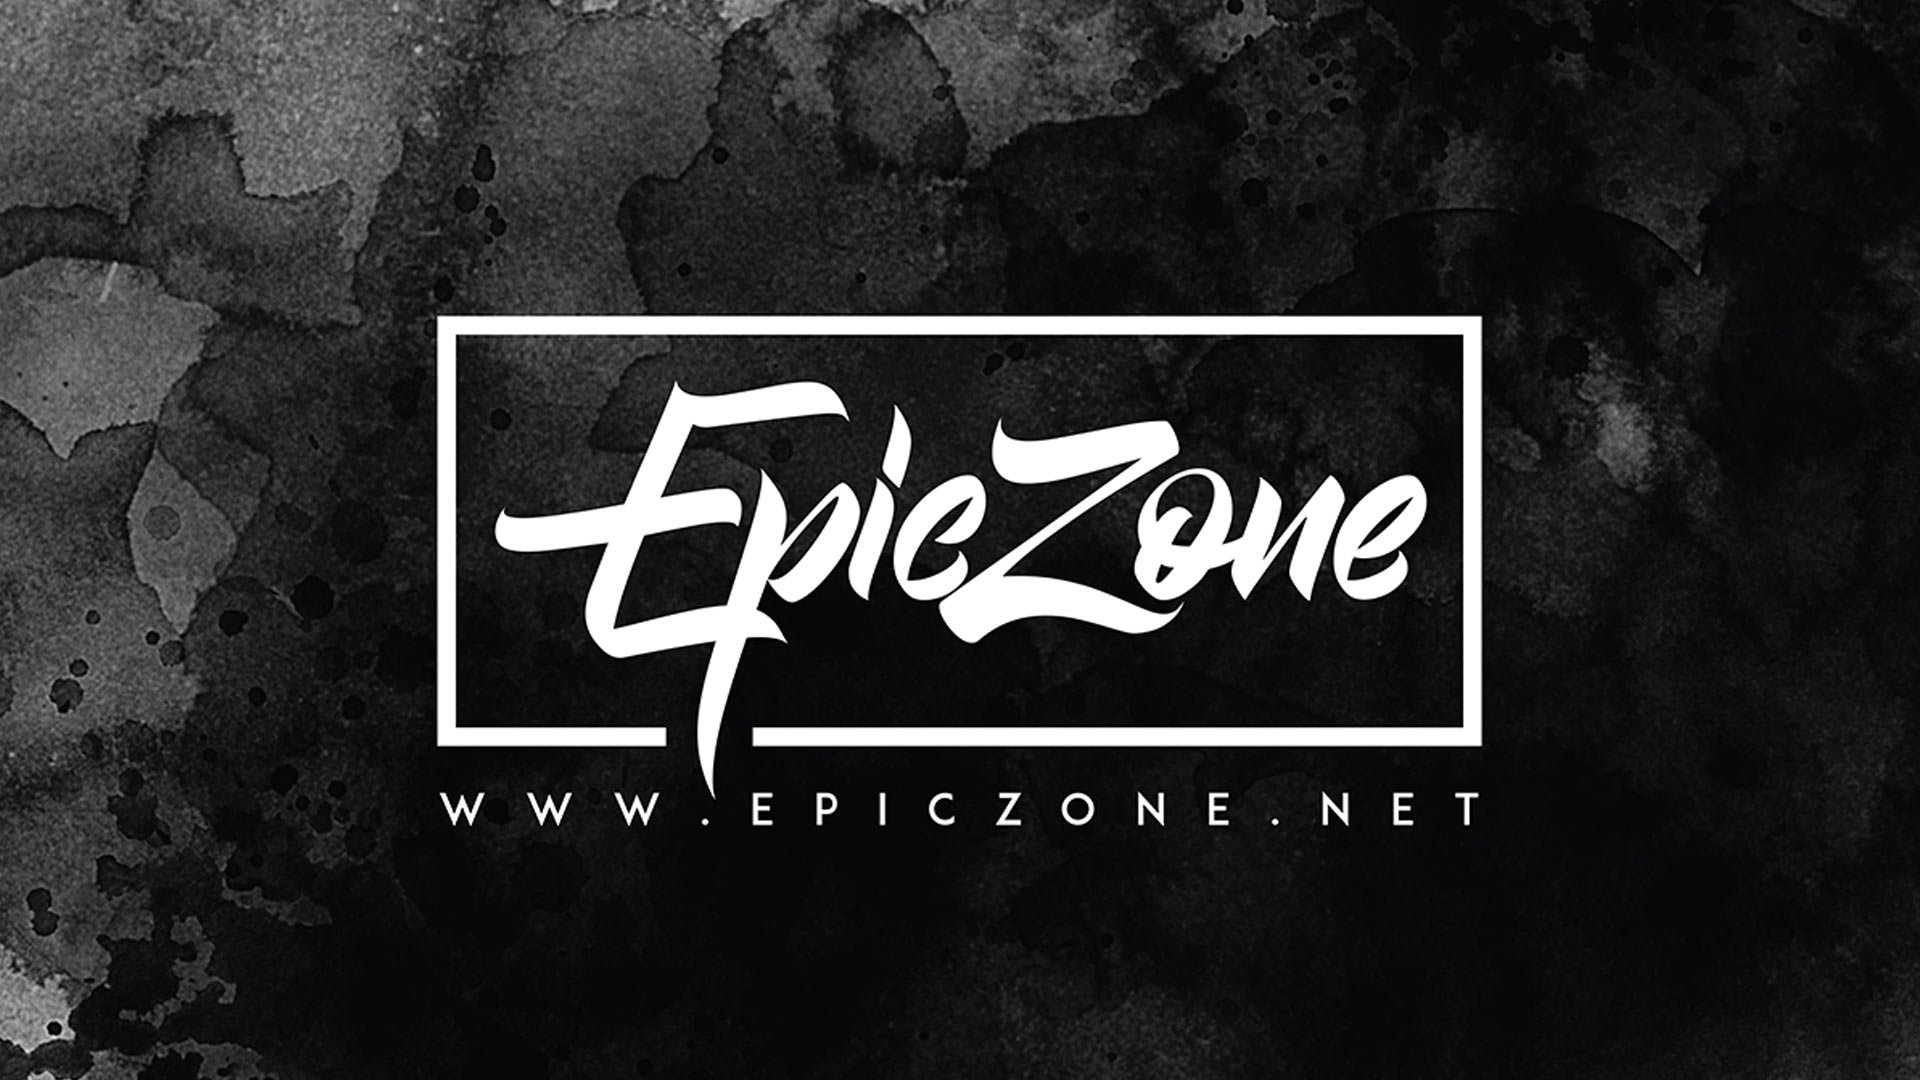 (c) Epiczone.net